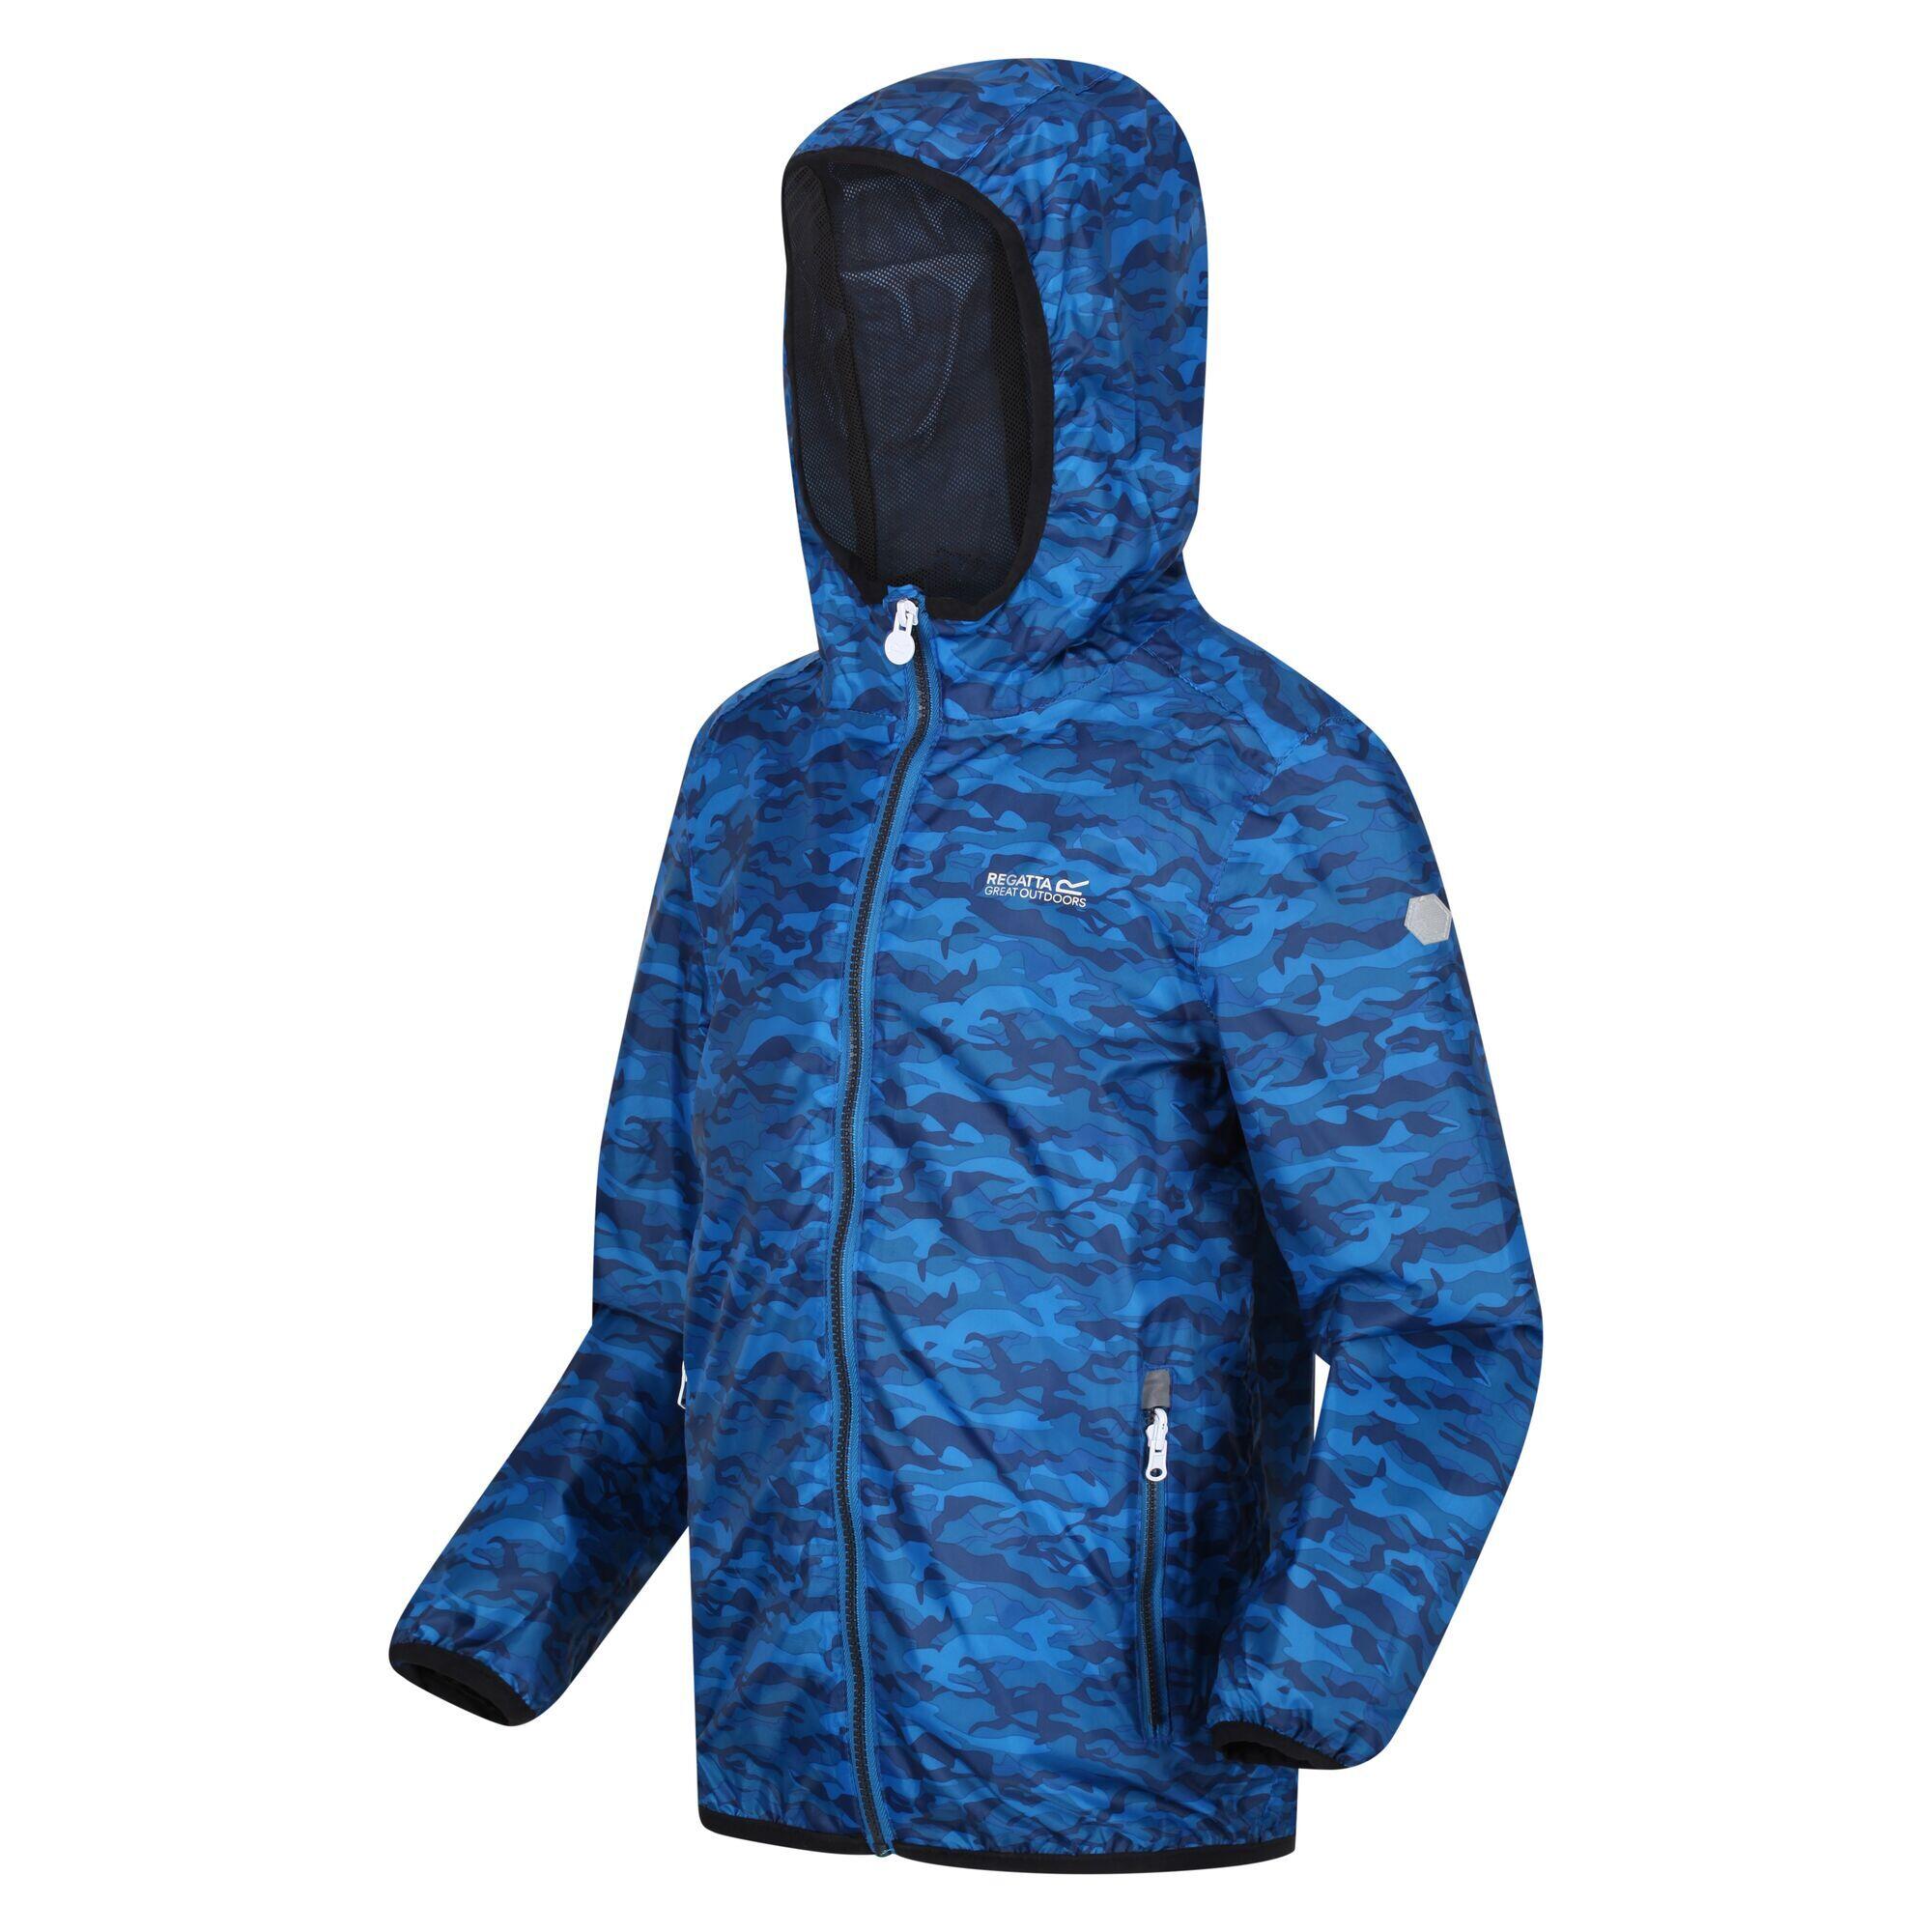 Childrens/Kids Lever Camo Packaway Waterproof Jacket (Imperial Blue) 4/5